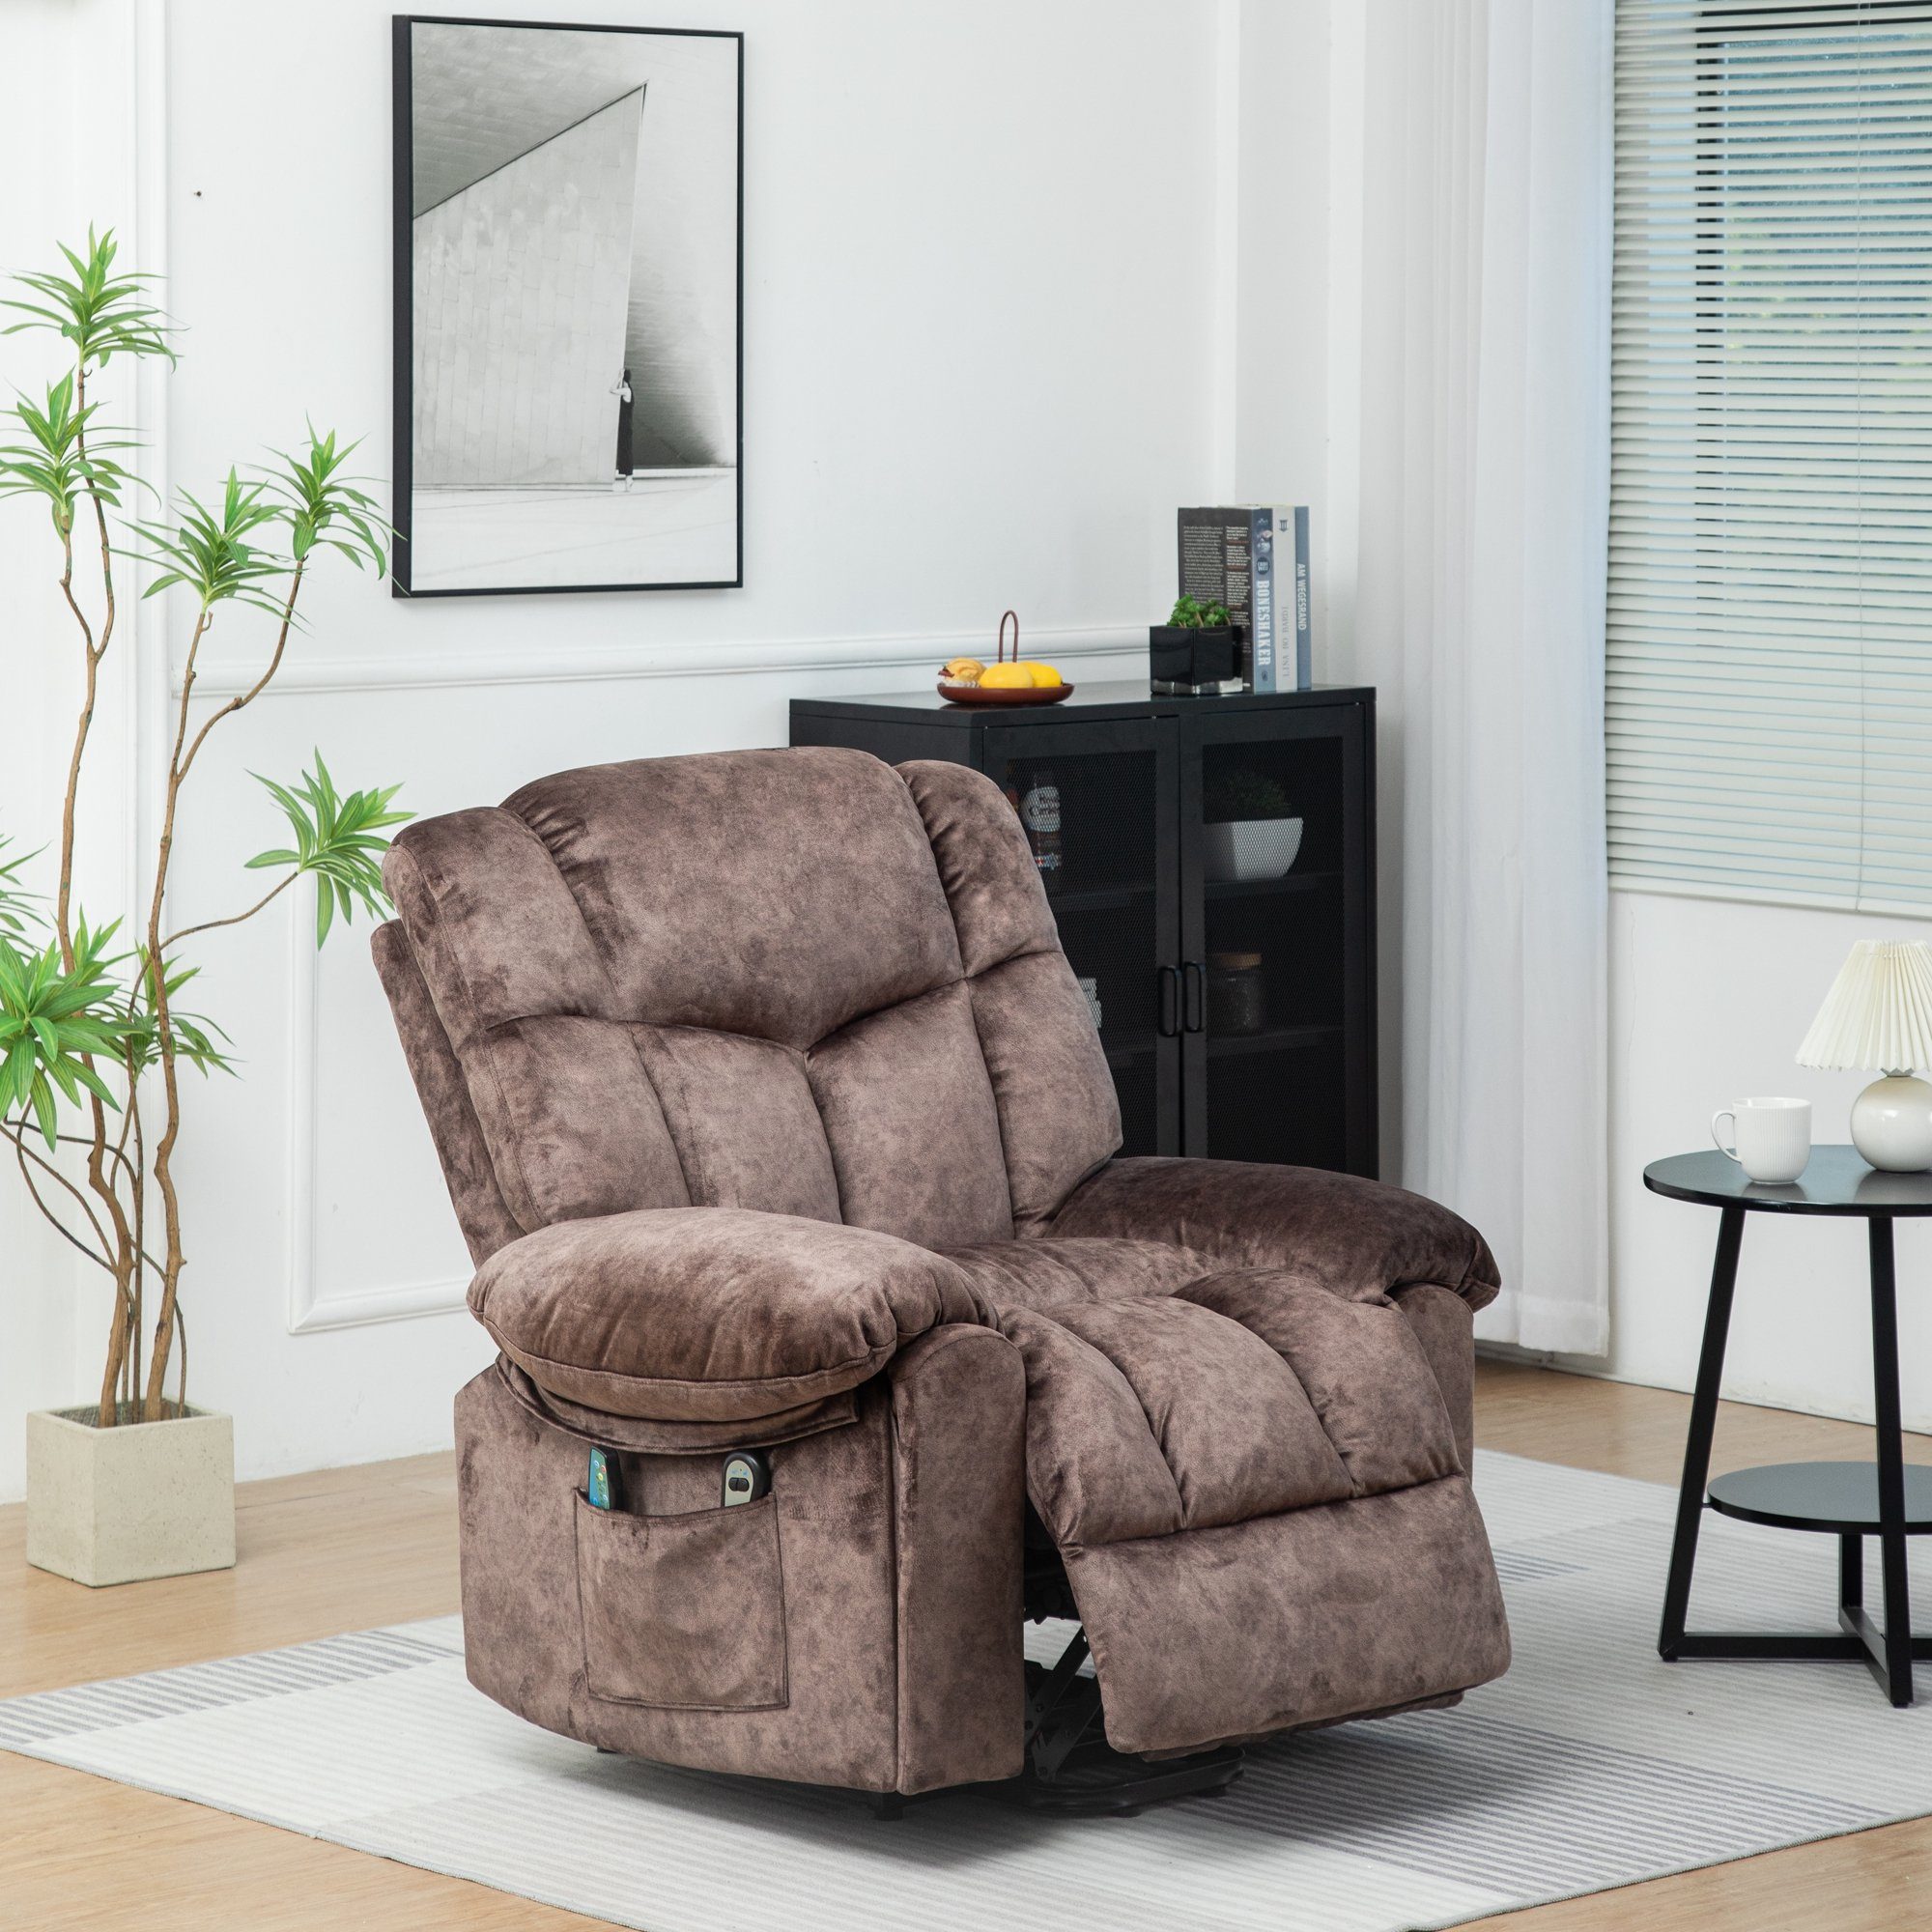 Merax TV-Sessel Elektrisch Relaxsessel mit Aufstehhilfe und Liegefunktion, Fernsehsessel mit relaxfunktion, Wärme und Vibraiton, Massagesessel Braun | Fernsehsessel